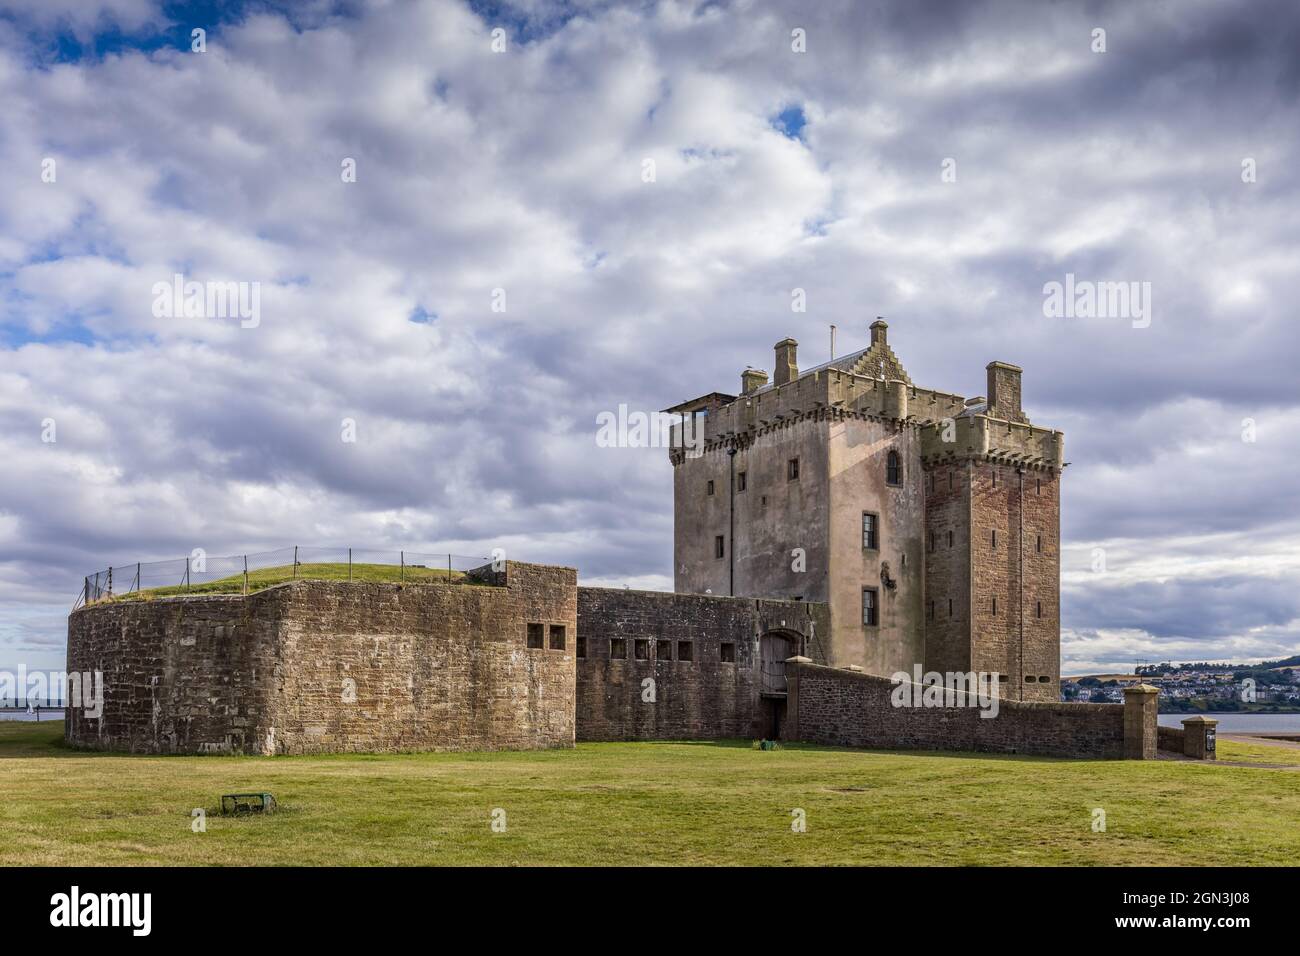 Le château de Broughty est un château historique situé sur les rives de la rivière Tay, à Broughty Ferry, Dundee, en Écosse. Banque D'Images